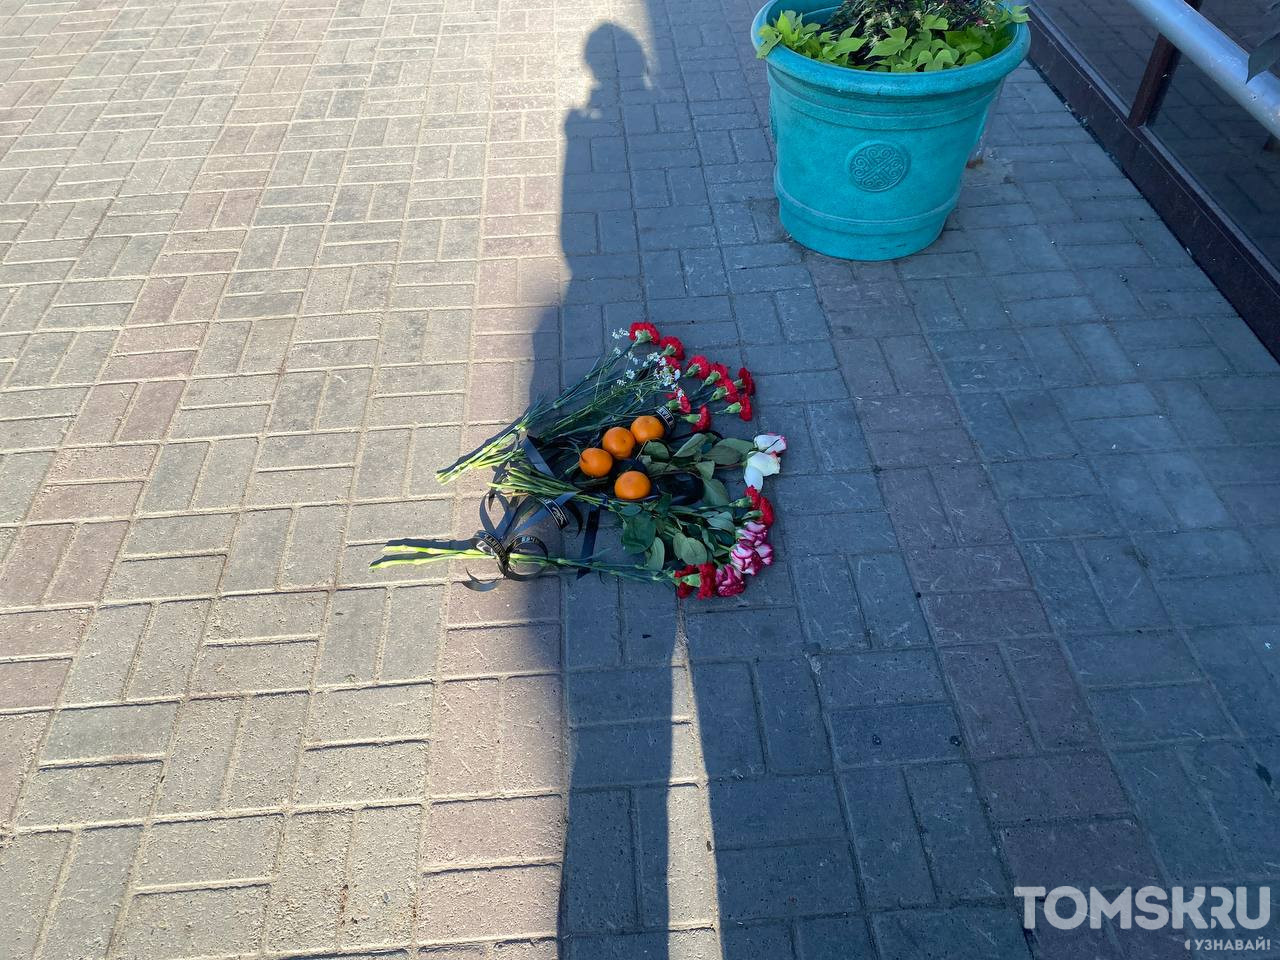 К разбитому доту приходят ребята. Похороны убитого на Фрунзенском рынке Томск. Фото убитого на Фрунзенском рынке Томск.